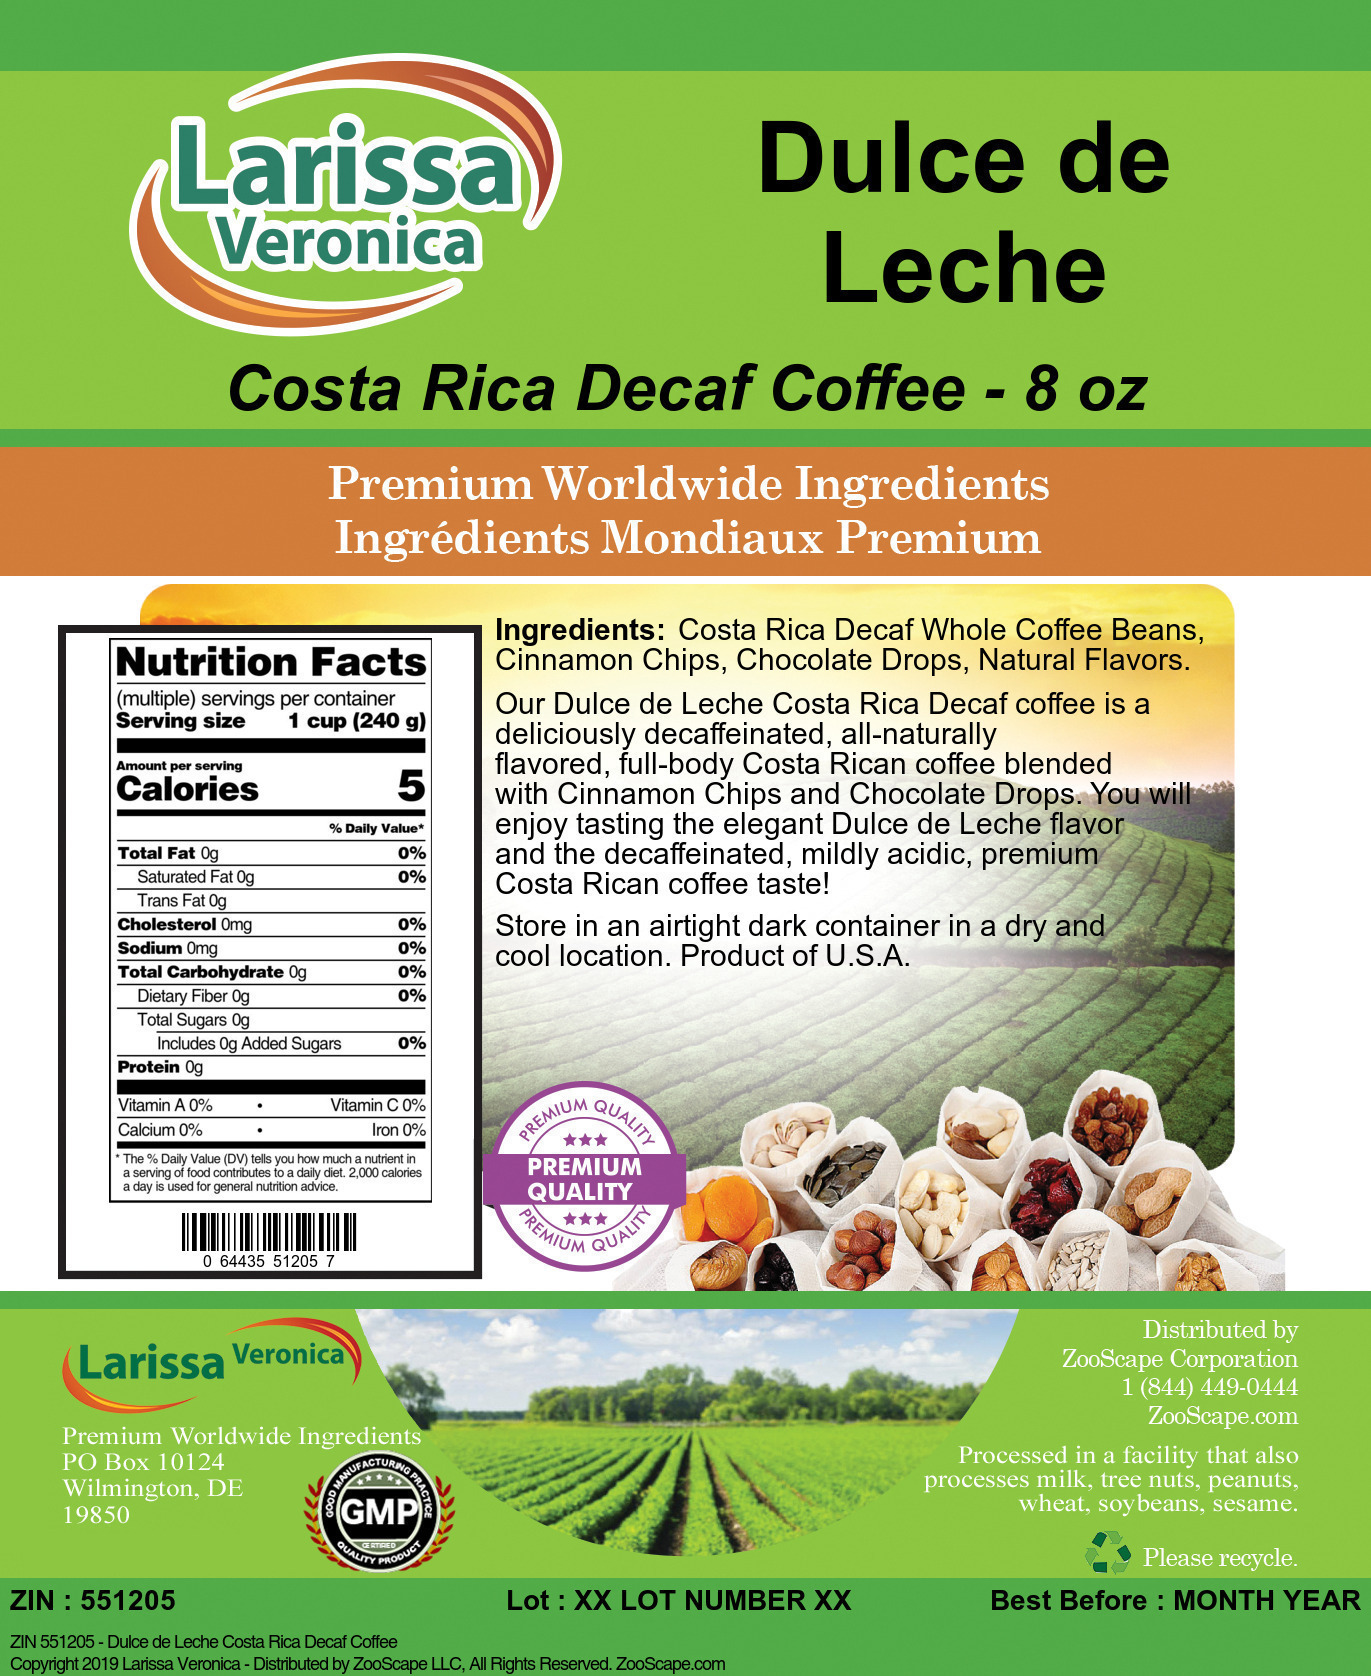 Dulce de Leche Costa Rica Decaf Coffee - Label